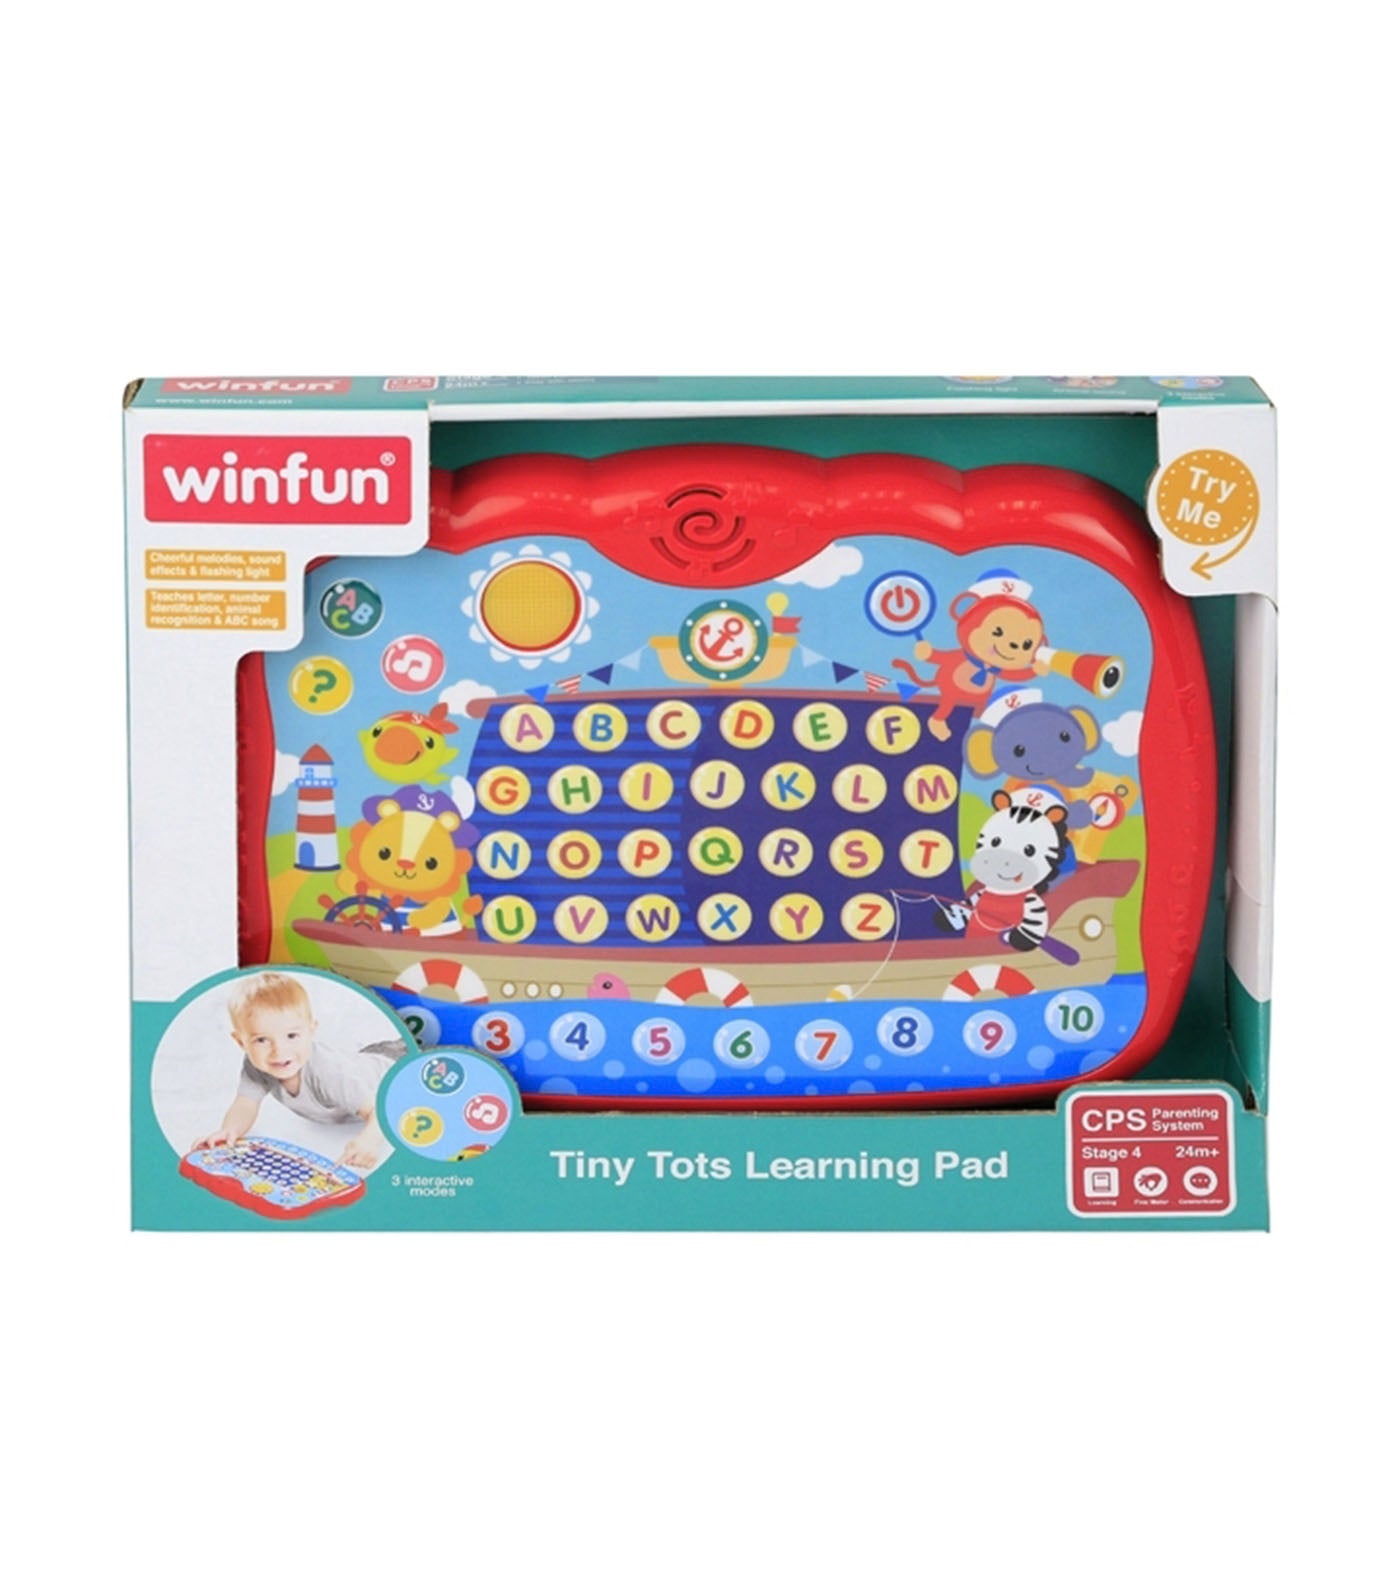 Tiny Tots Learning Pad